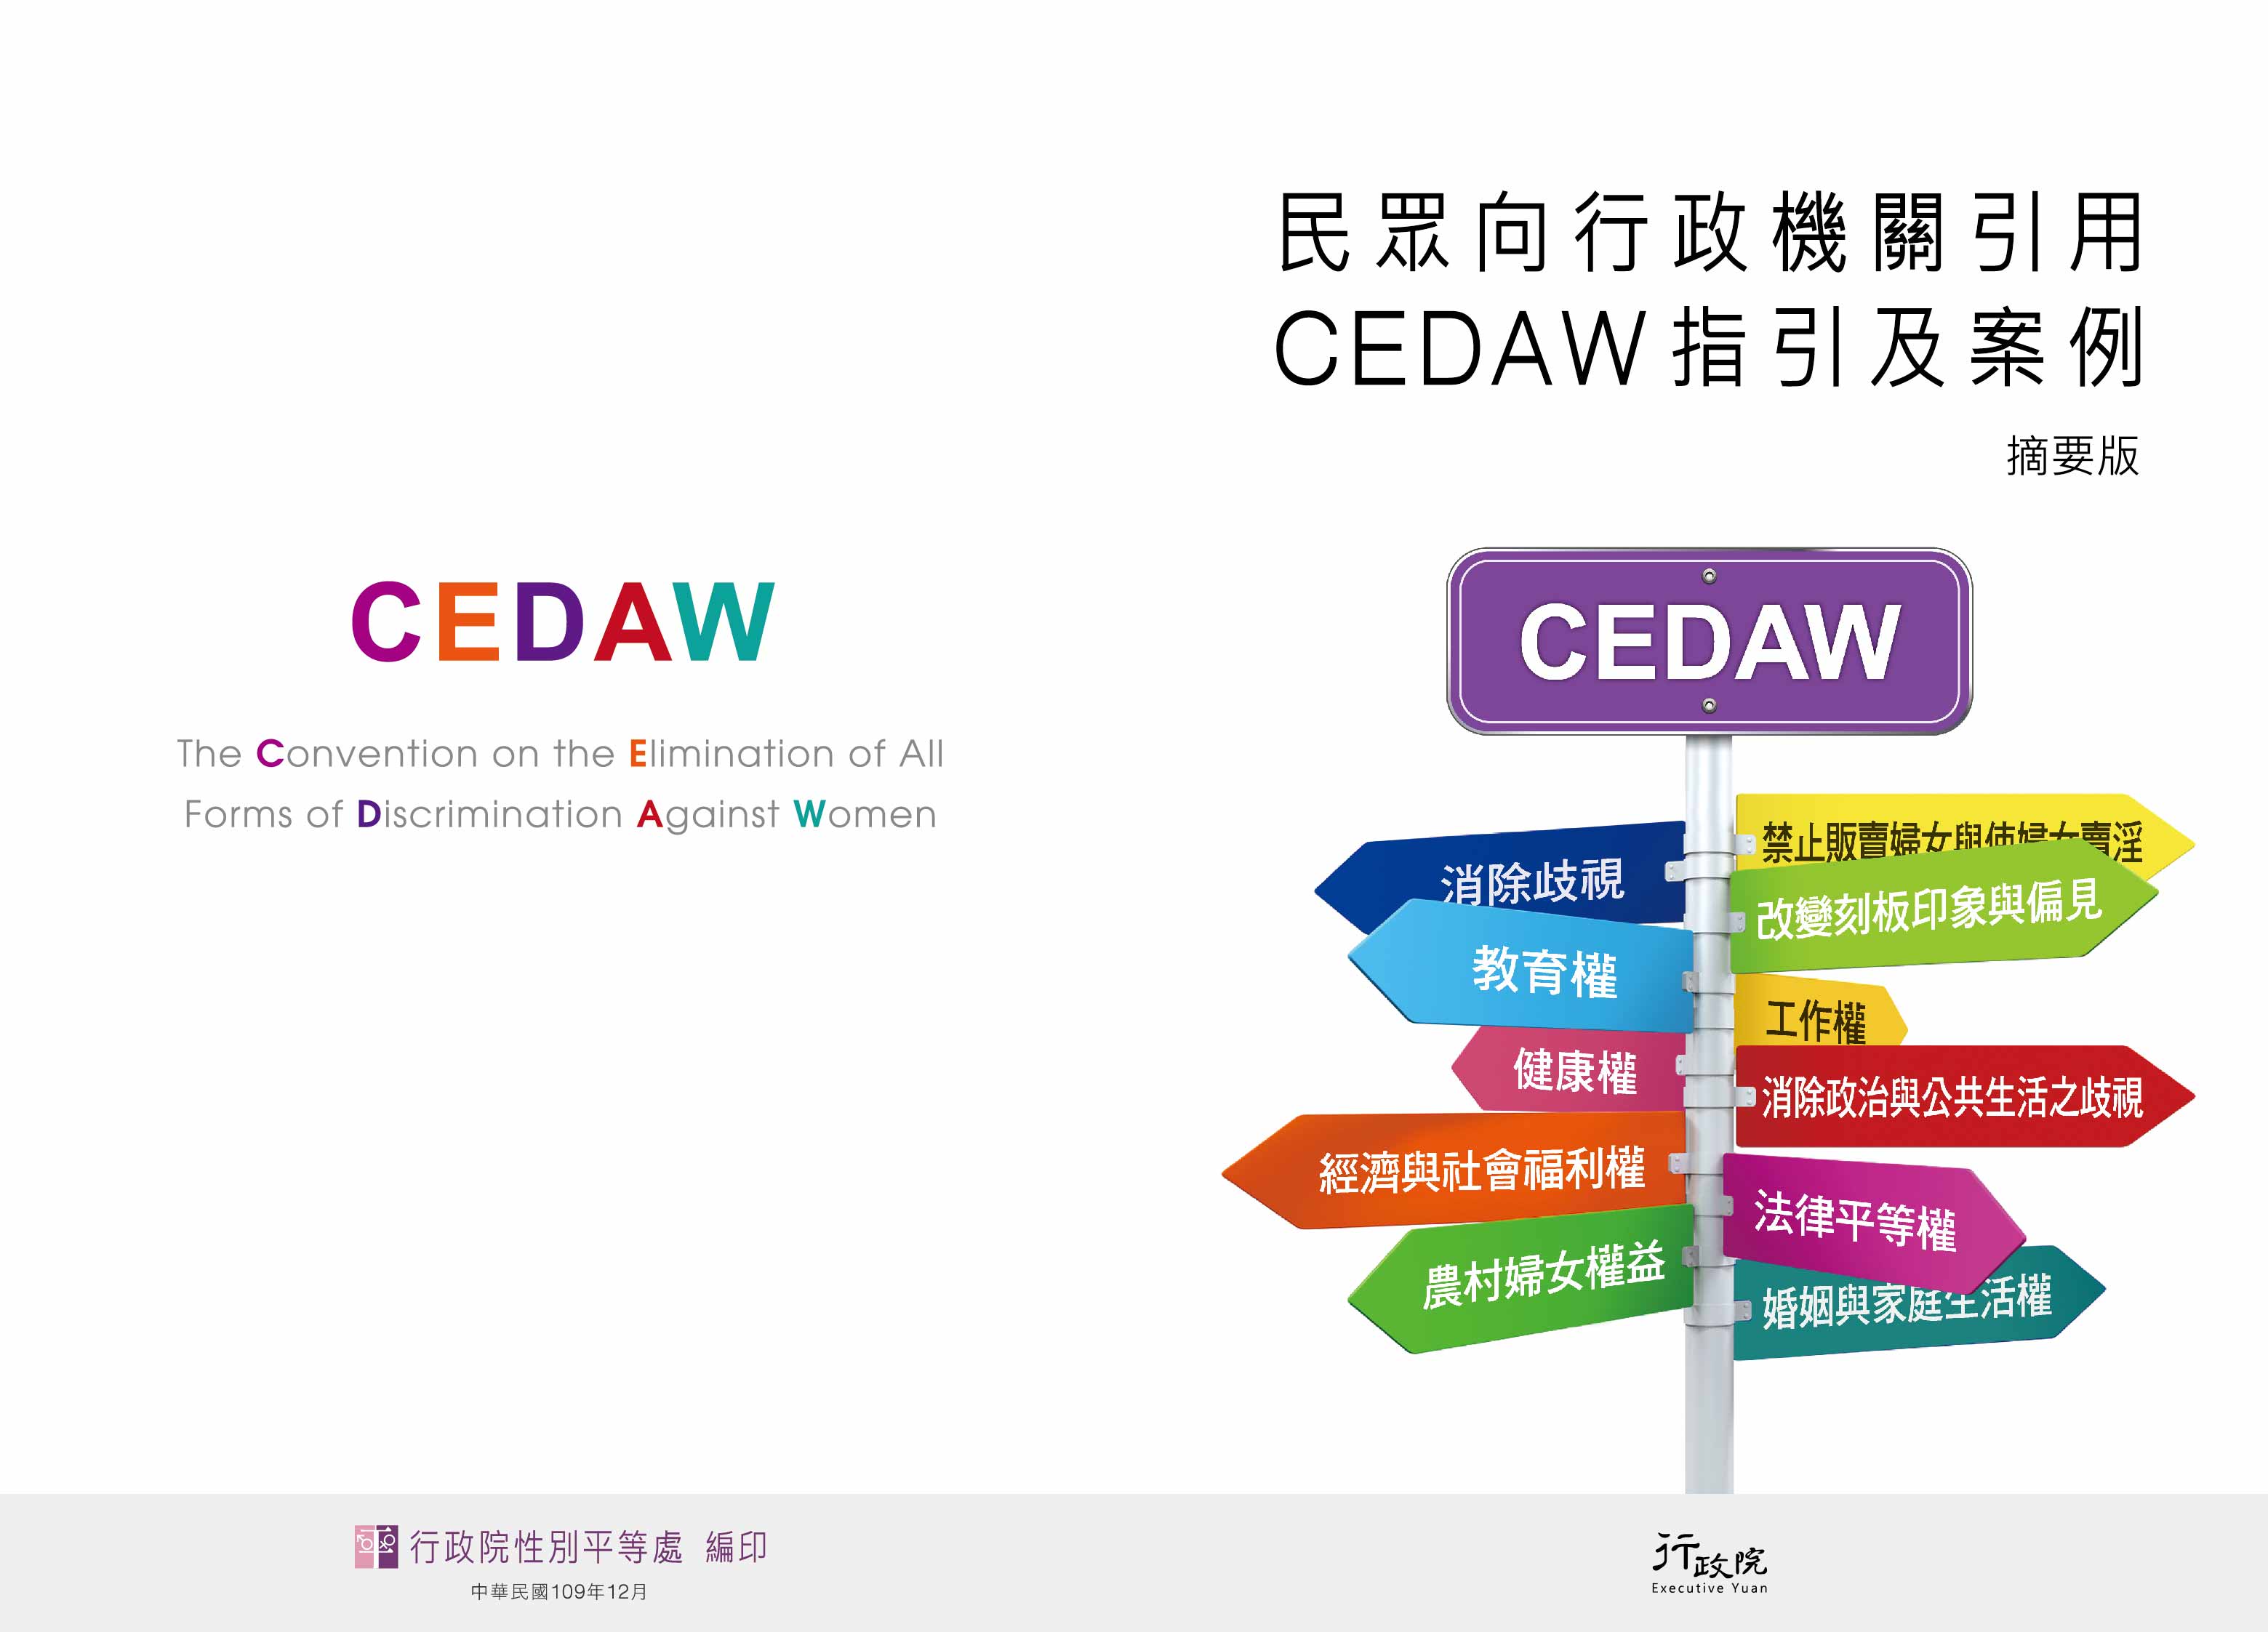 行政院性別平等處-民眾向行政機關引用CEDAW指引及案例